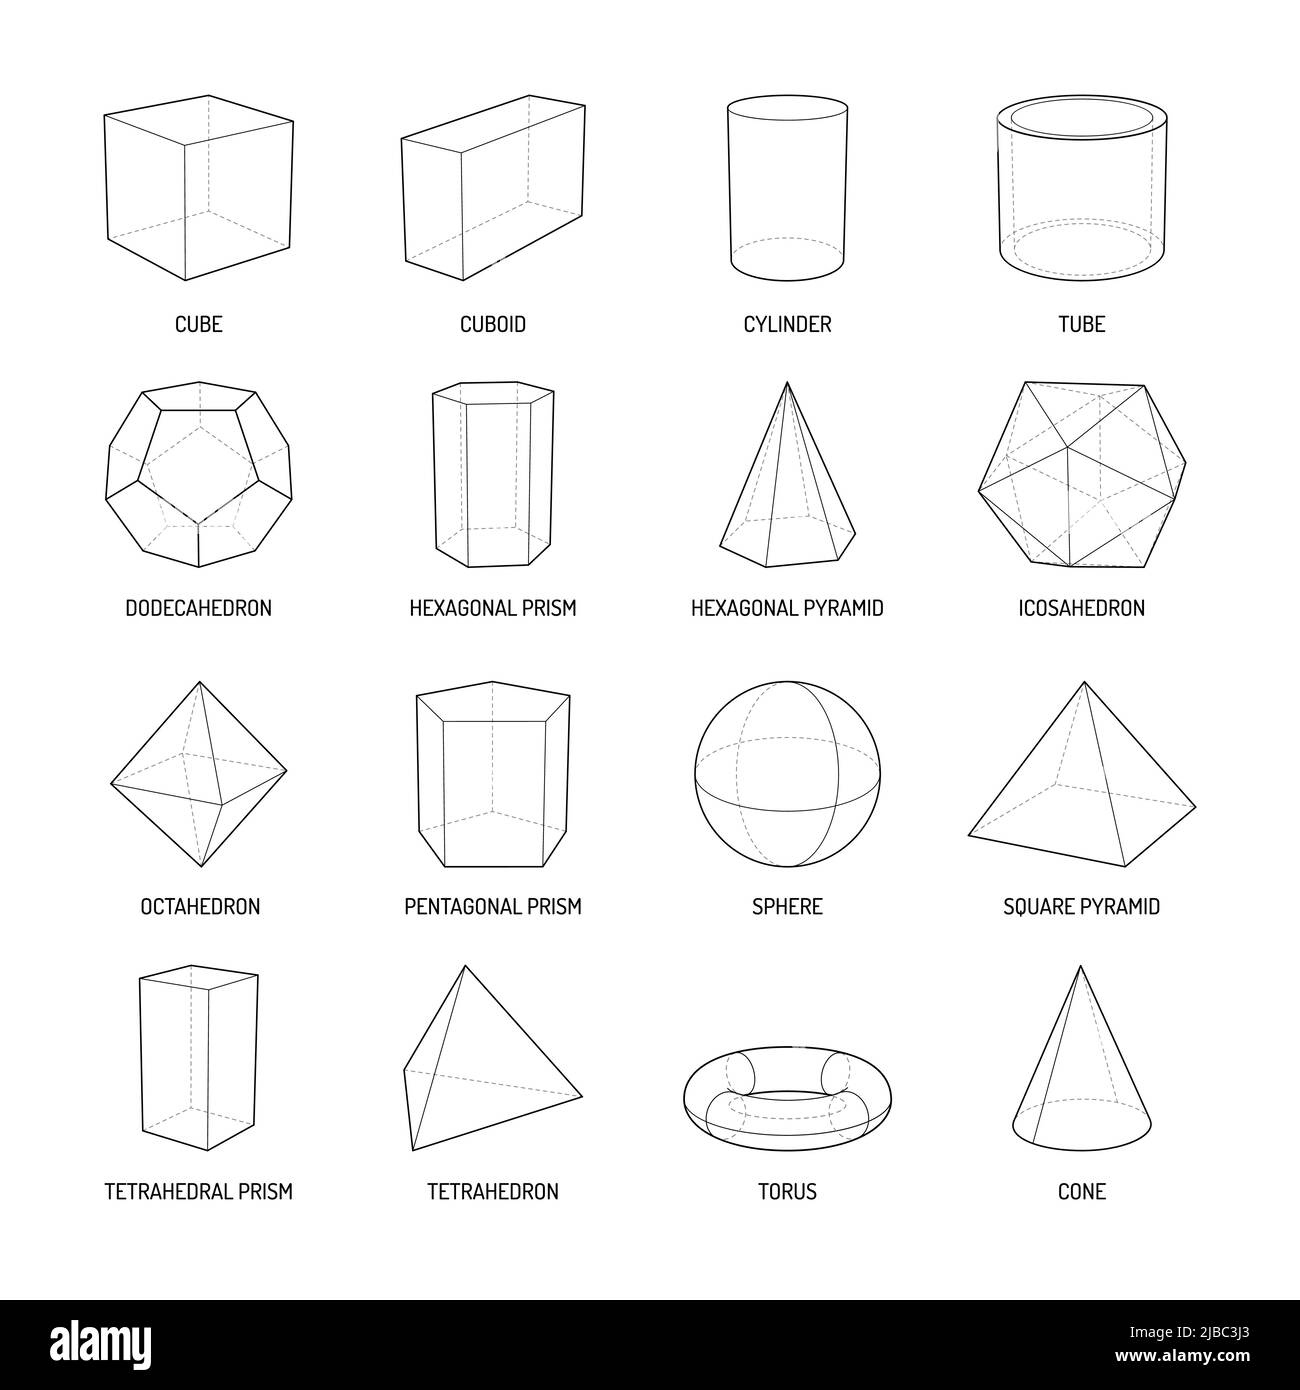 Stereometria di base forma linea set di cuboide octahedron piramide prisma cubo cono cilindro toro isolato vettore illustrazione Illustrazione Vettoriale